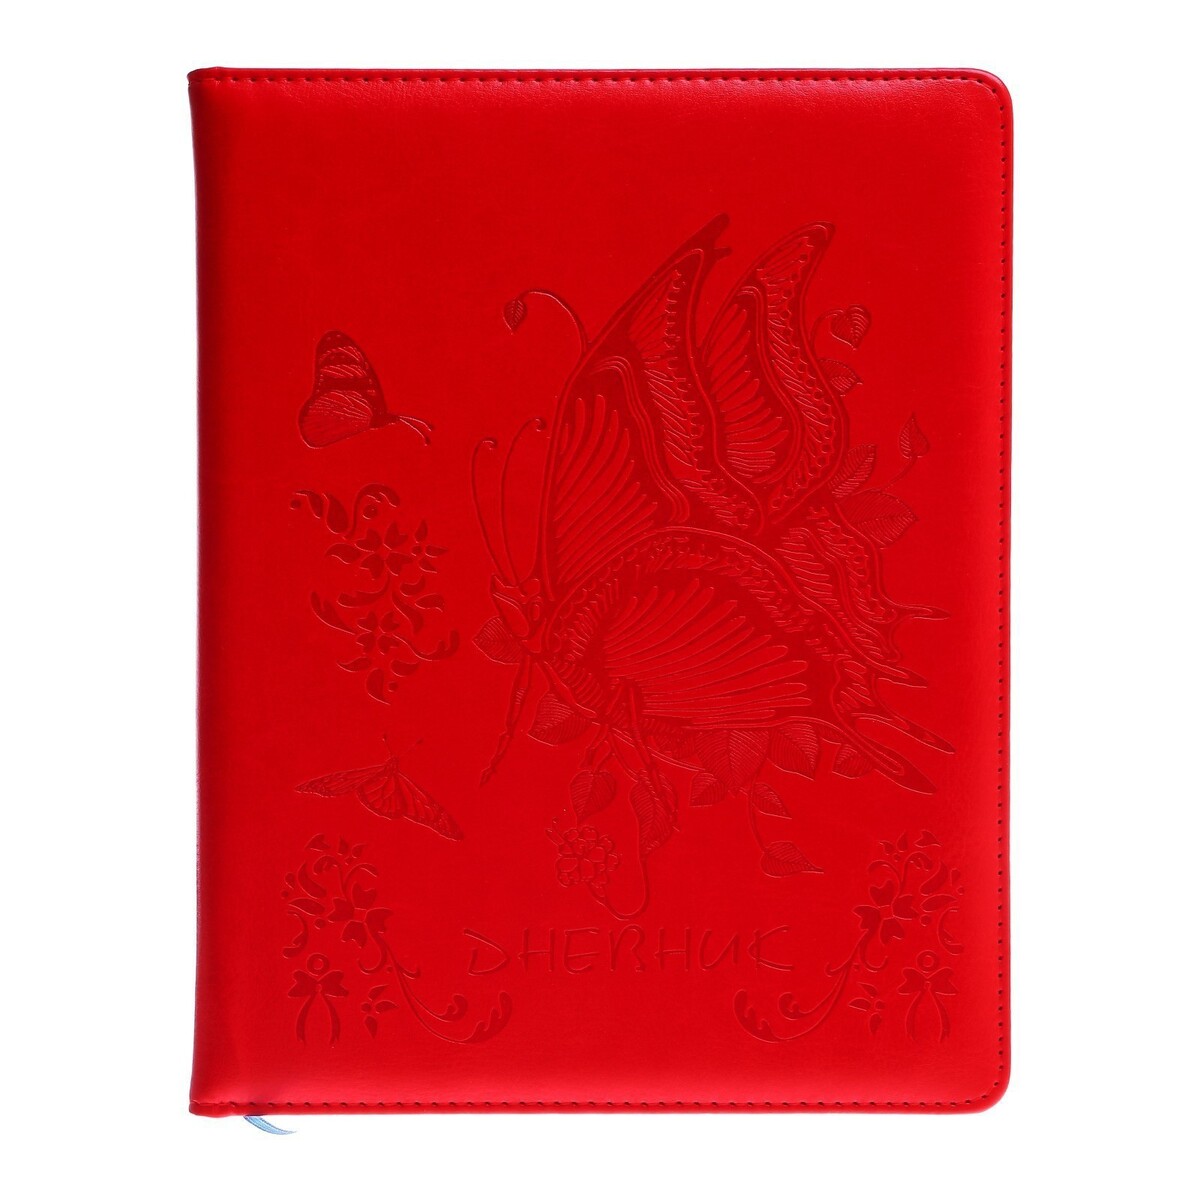 Дневник школьный, 5-11 класс, обложка пвх дневник дегустаций красный с золотом 160 стр